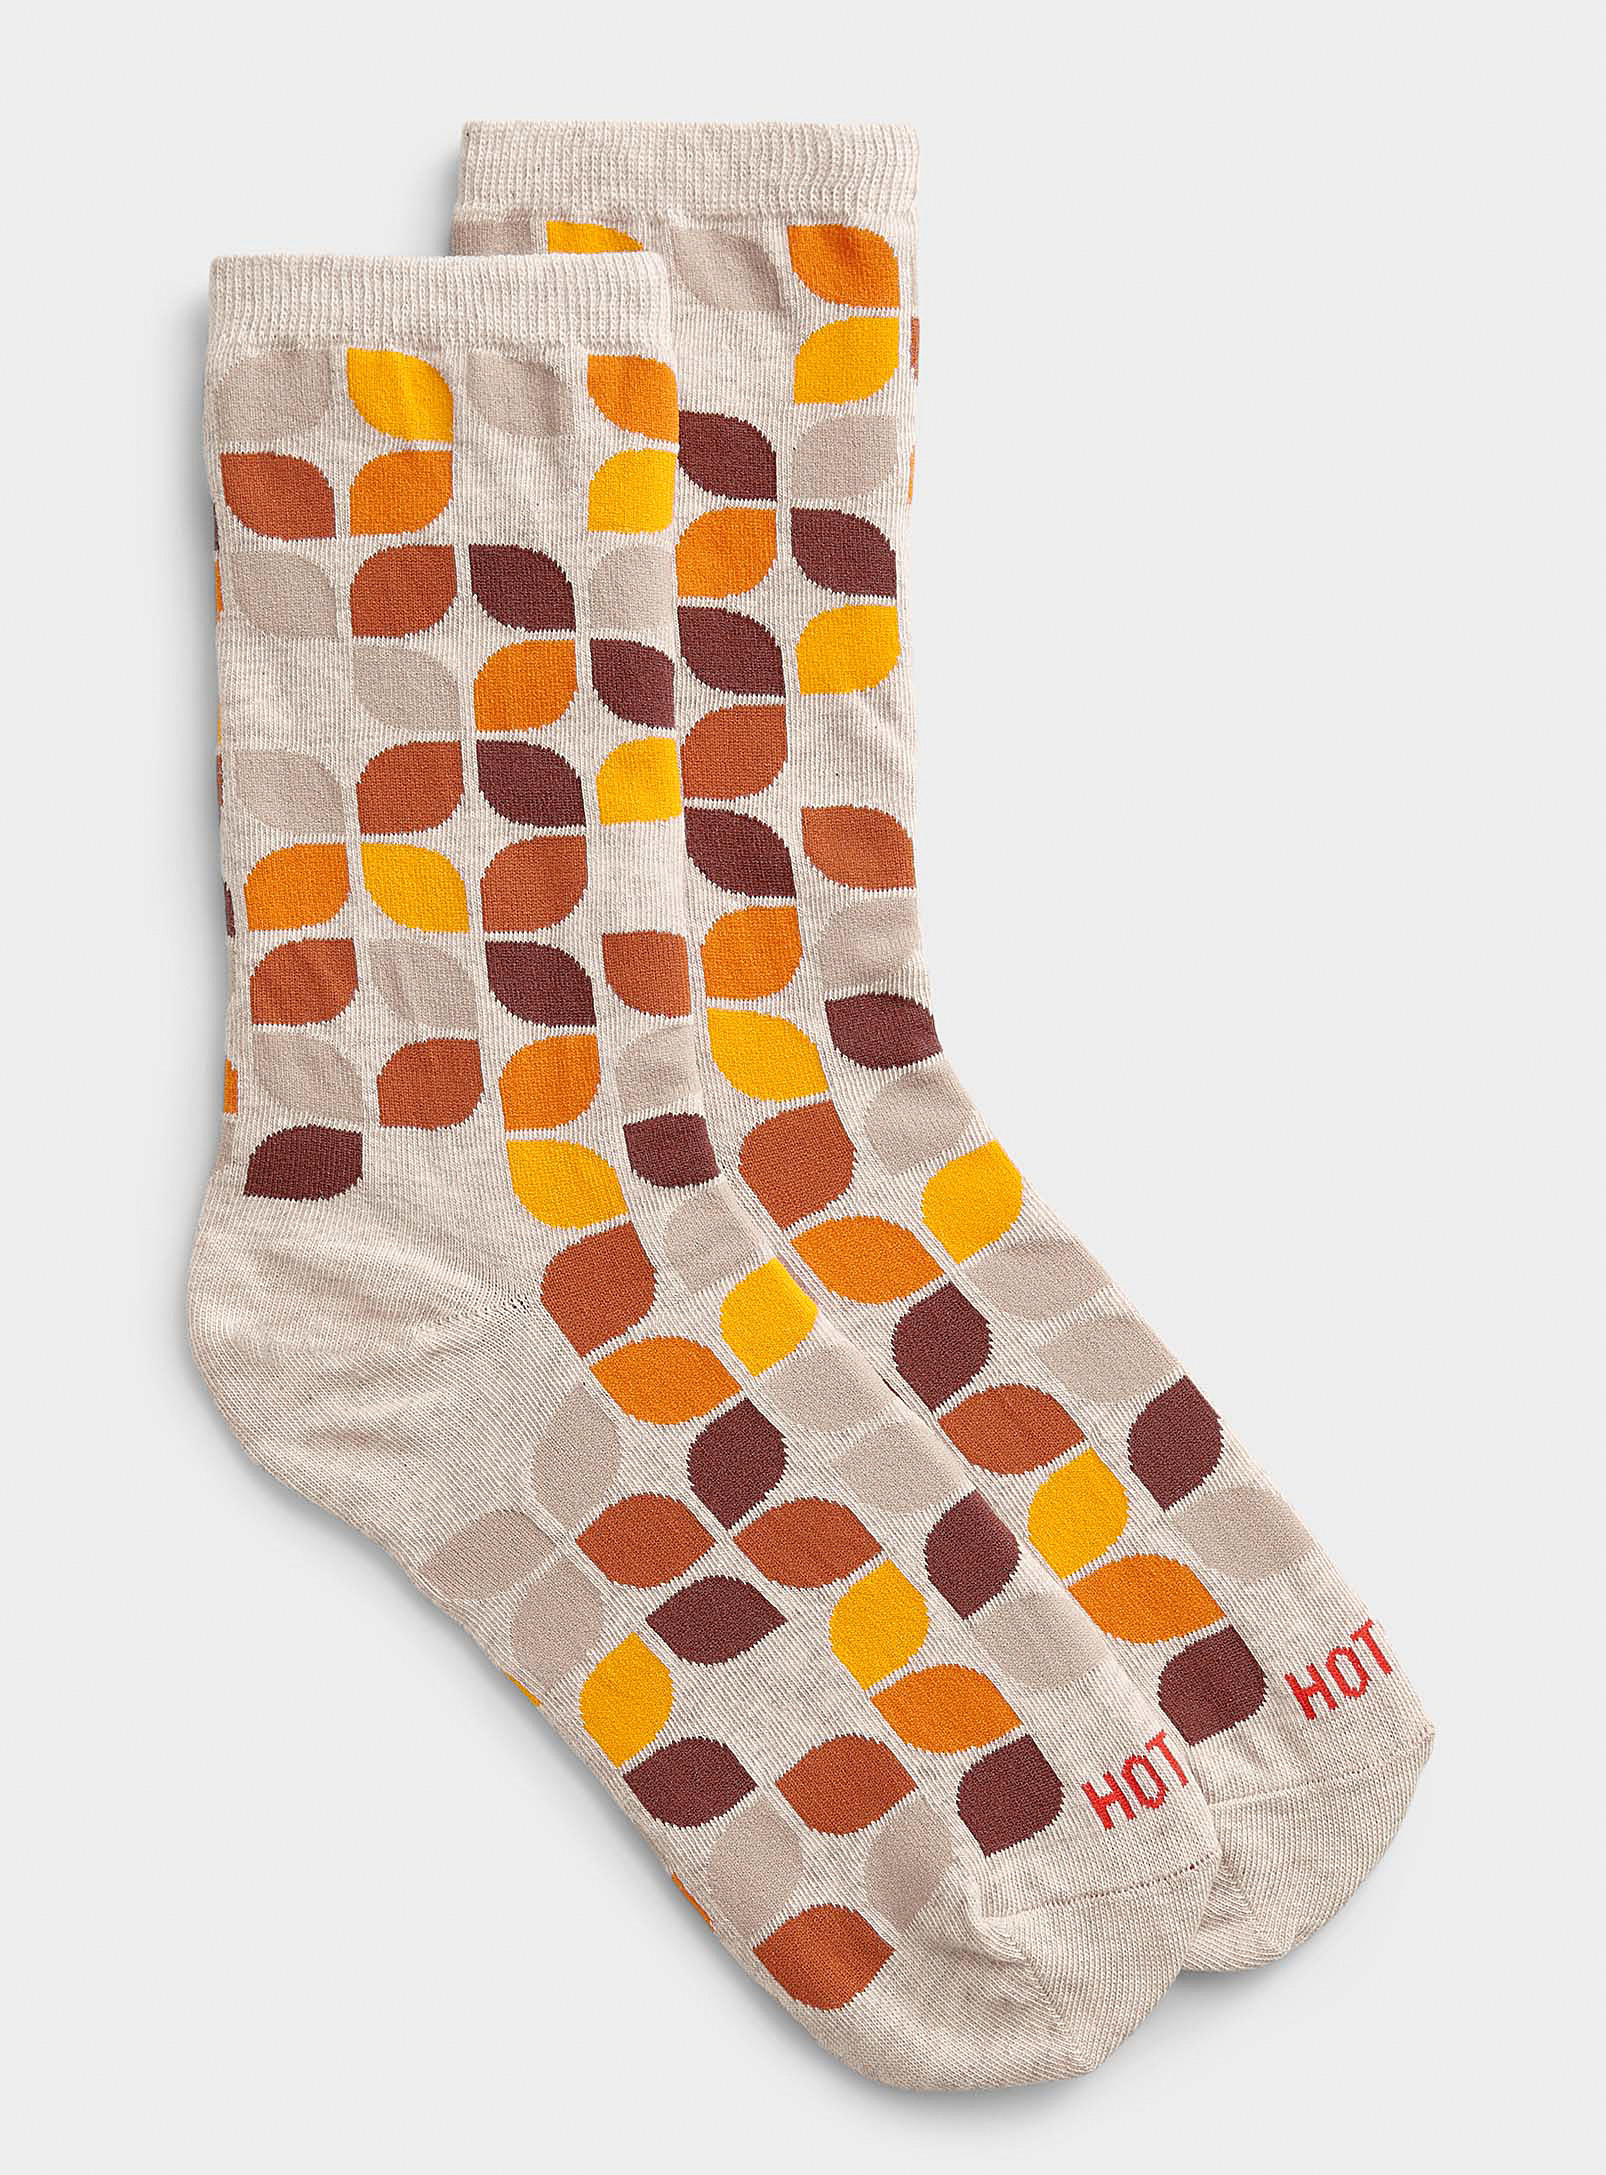 Hot Sox - Women's Geo leaf sock